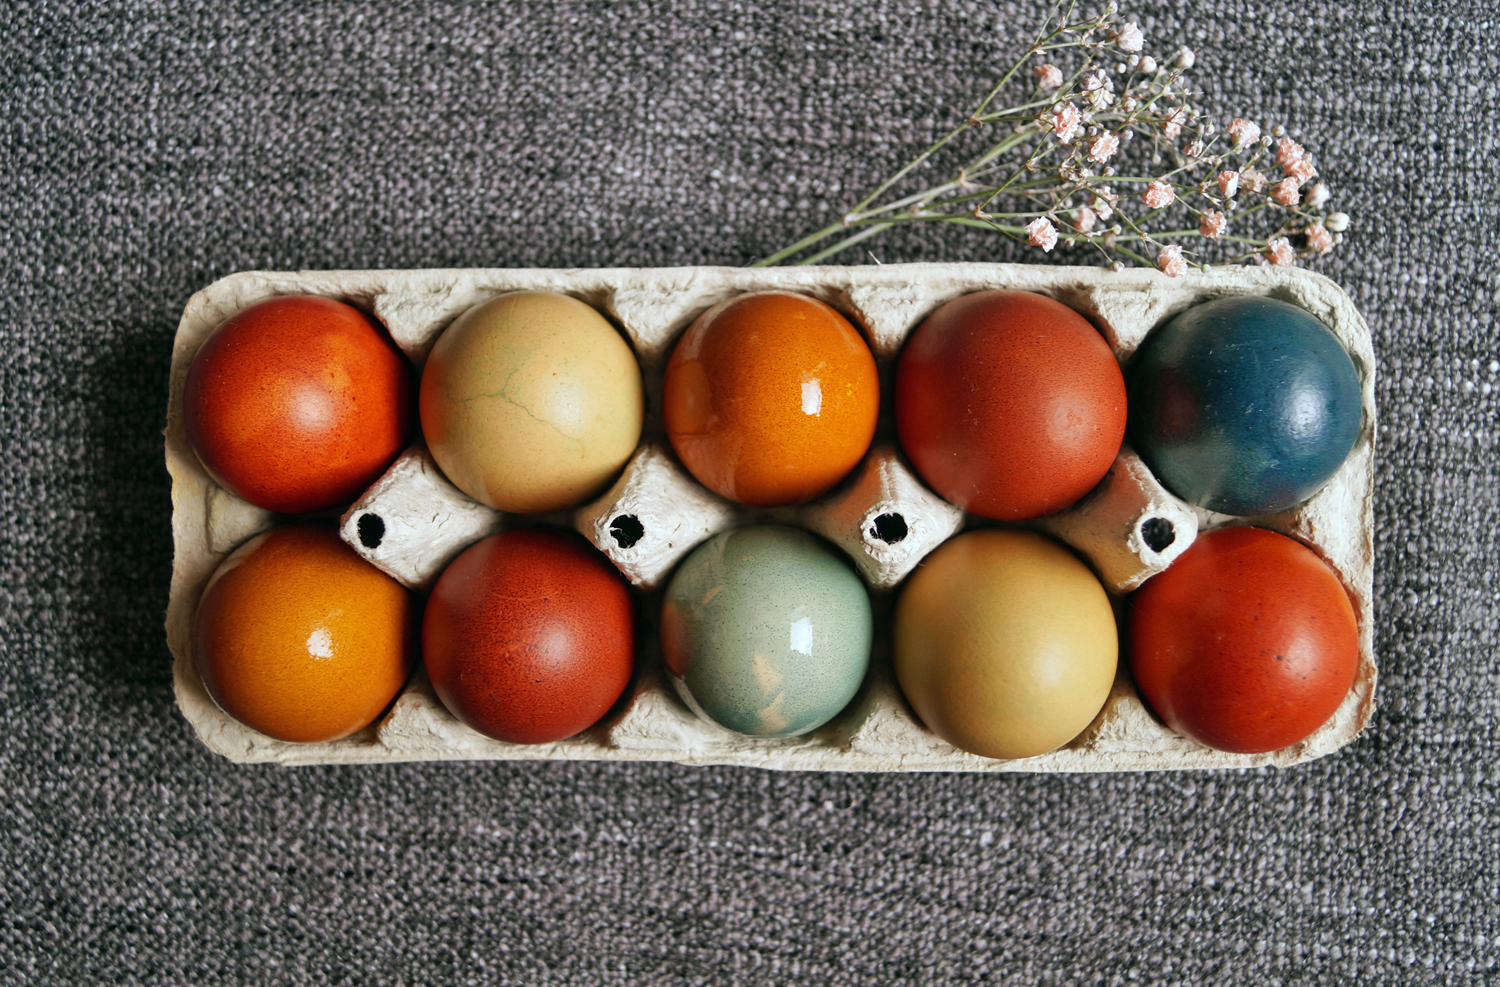 Naturalne barwniki do jajek pisanek. Sprawdziłam, czy naprawdę działają